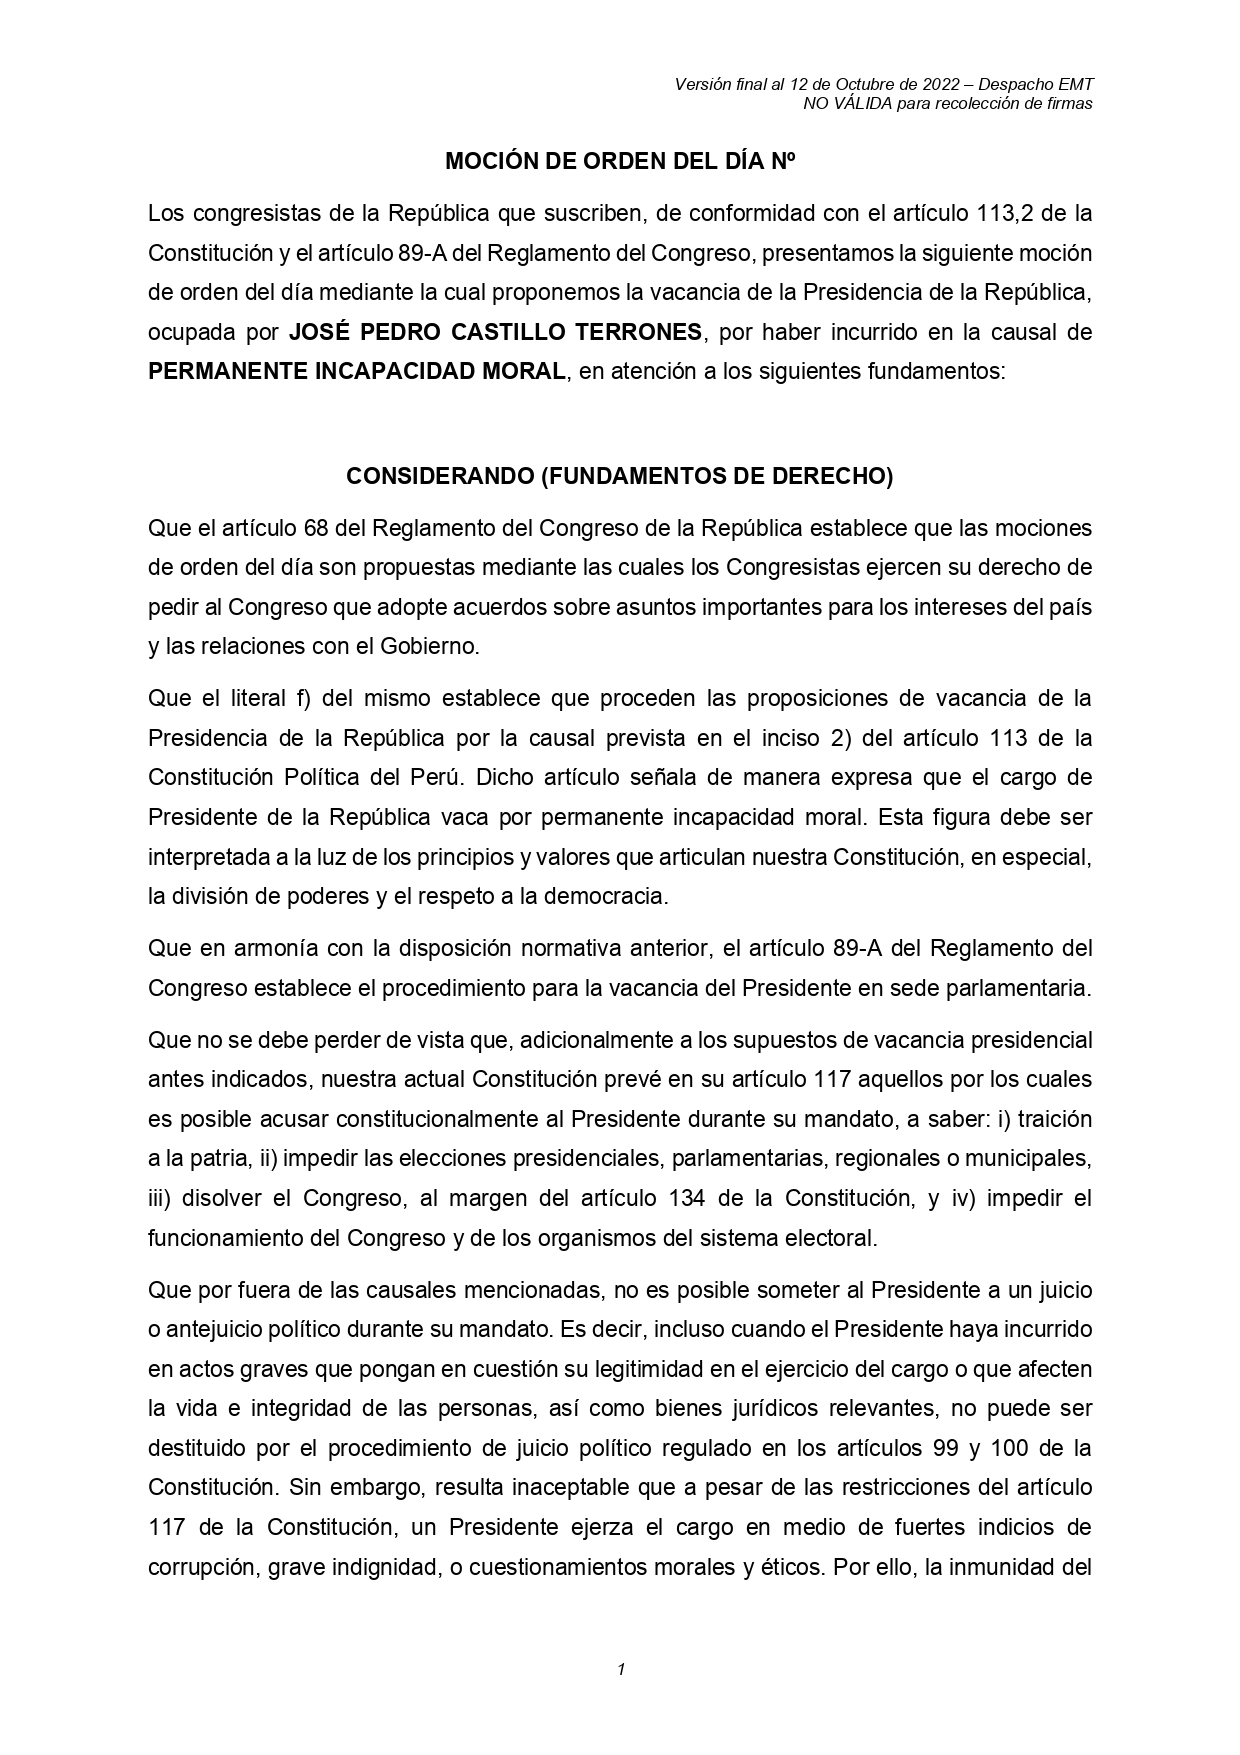 En el reciente mensaje a la Nación, el presidente Pedro Castillo intentó desprestigiar la denuncia constitucional de Patricia Benavides.